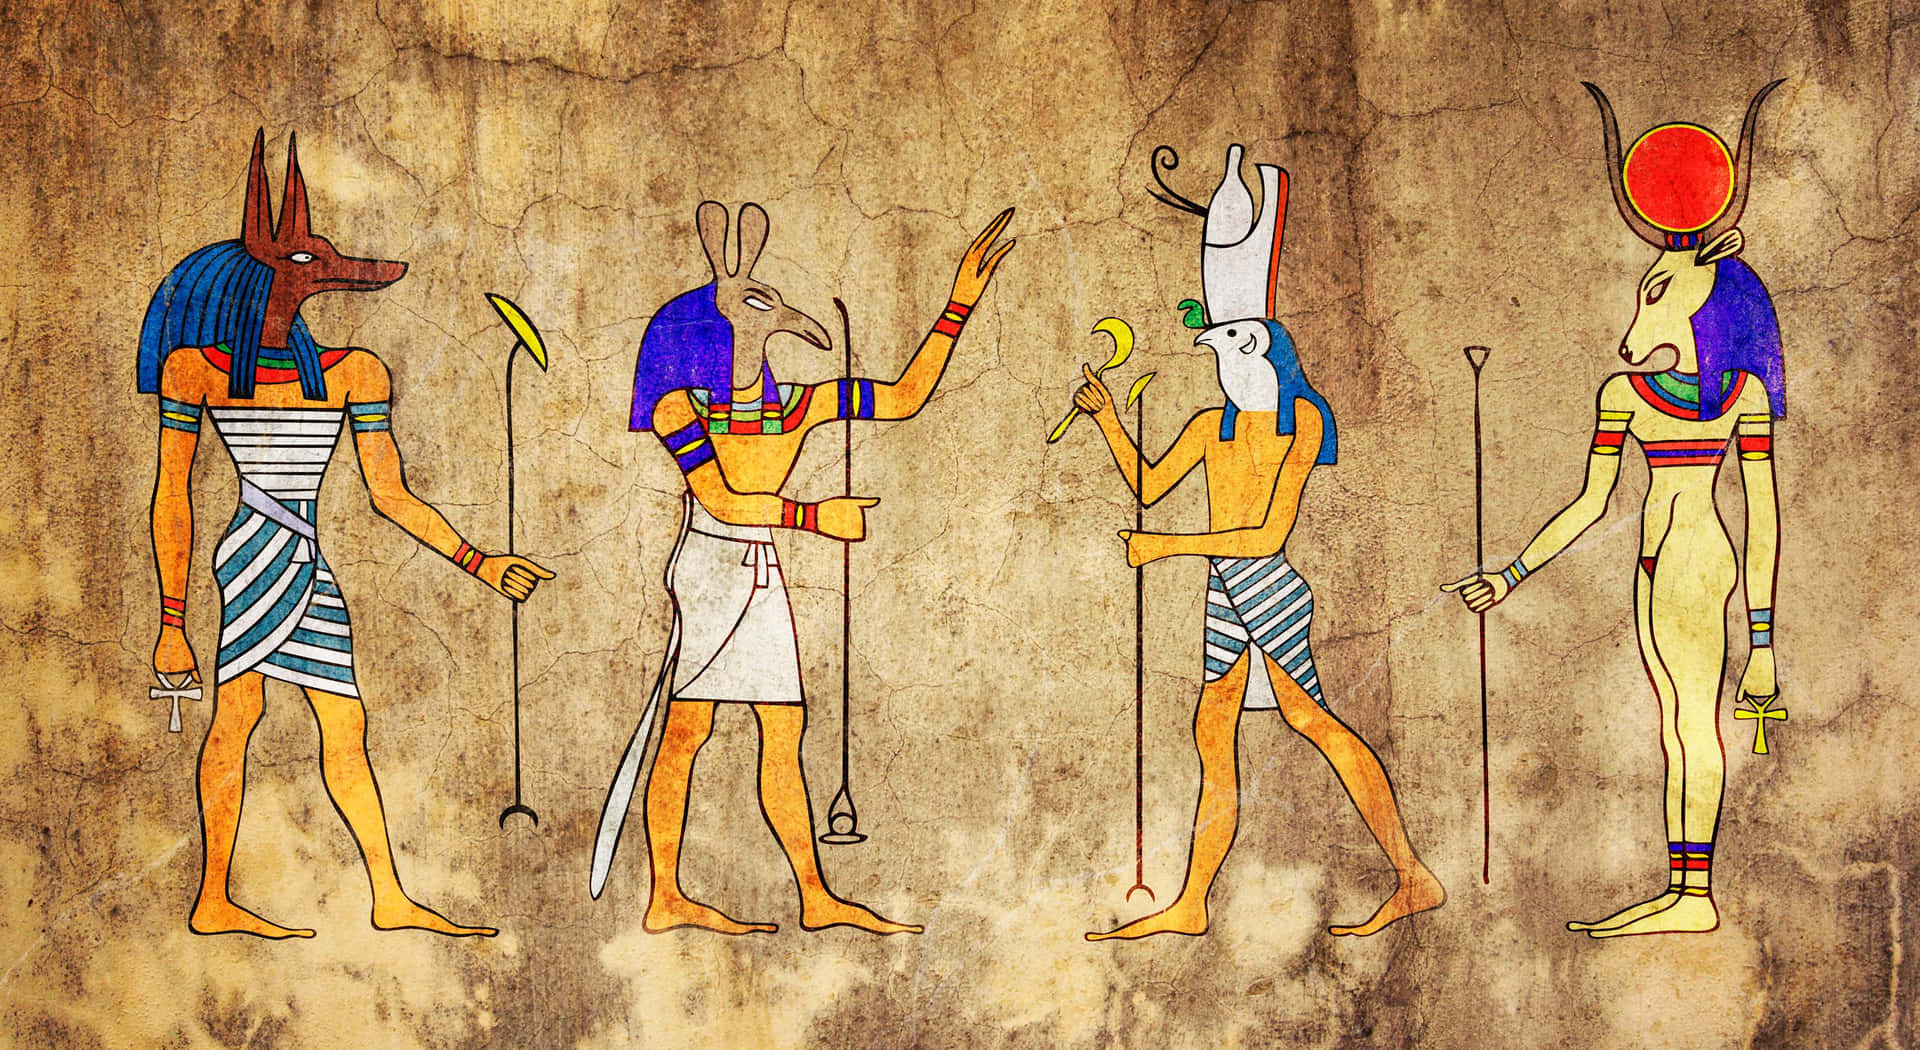 Imagemdos Deuses Egípcios 3475 X 1900